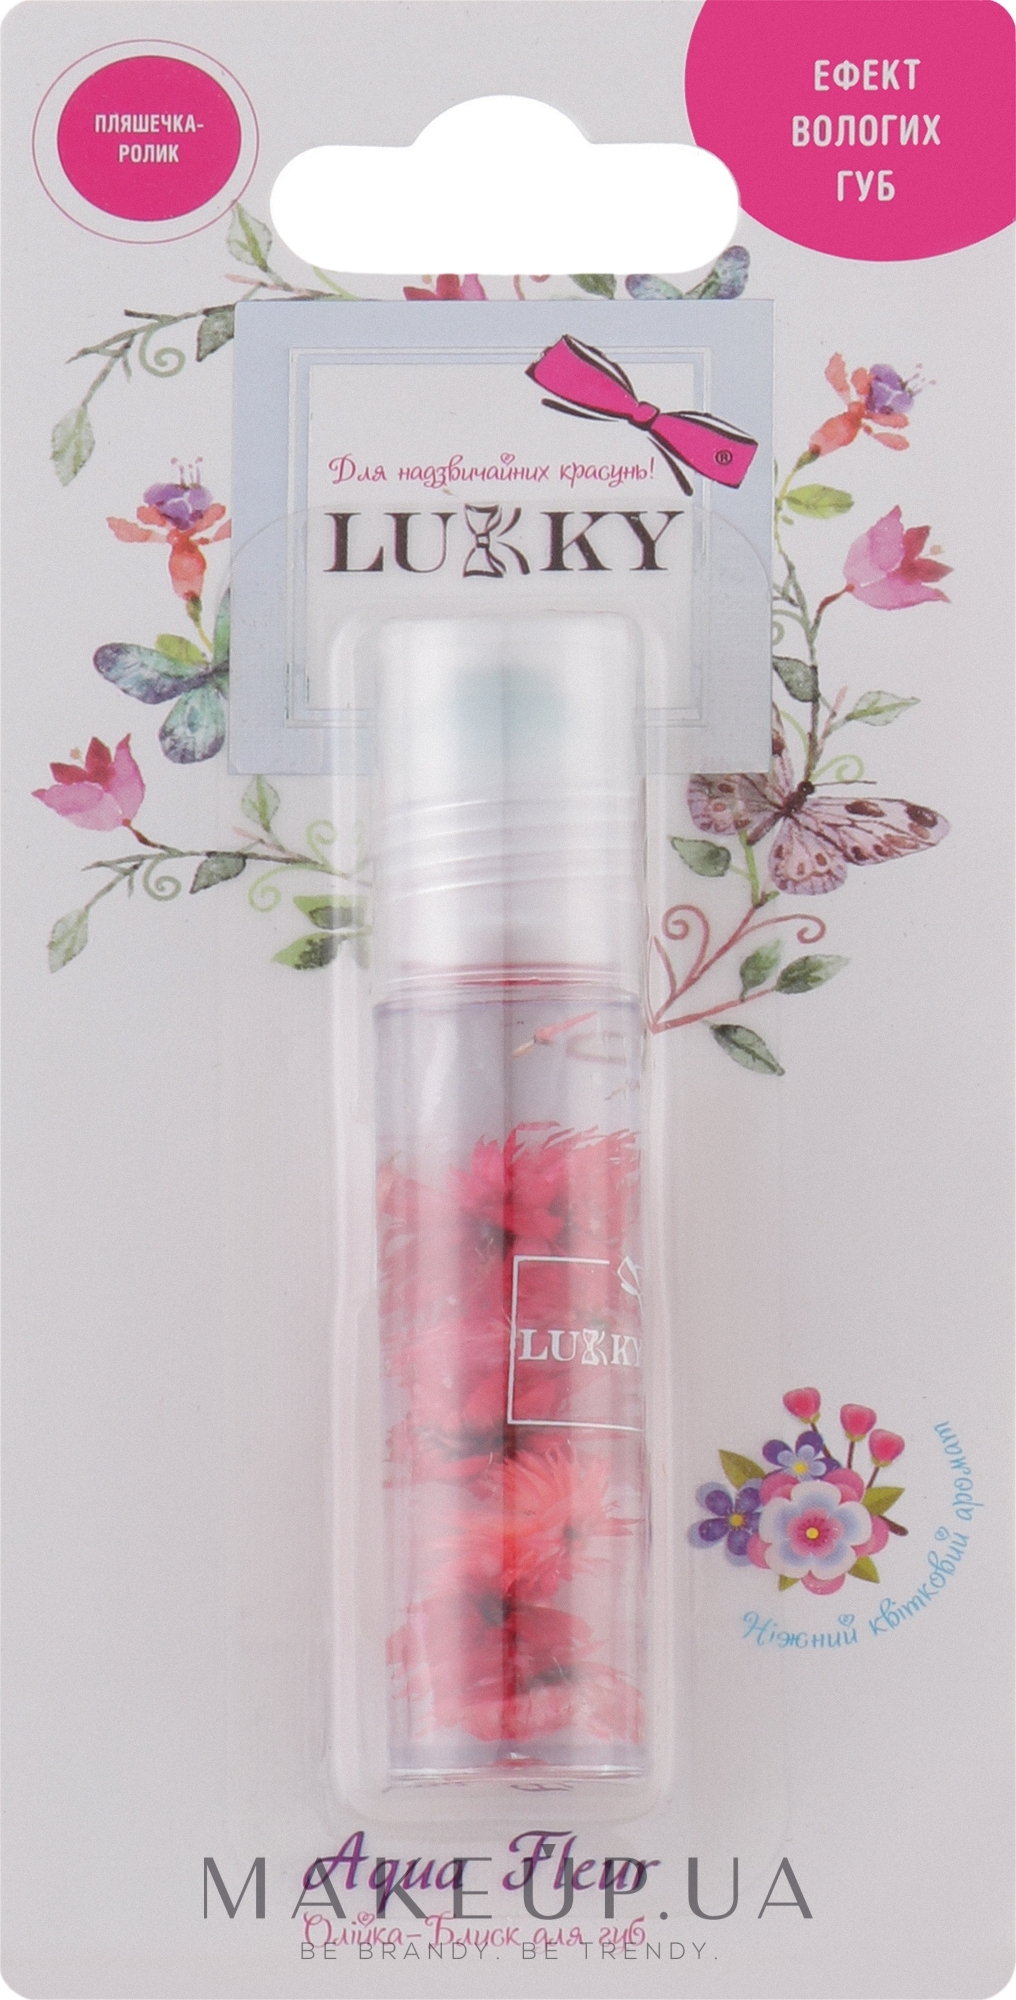 Lukky - Lukky — фото Красные цветы